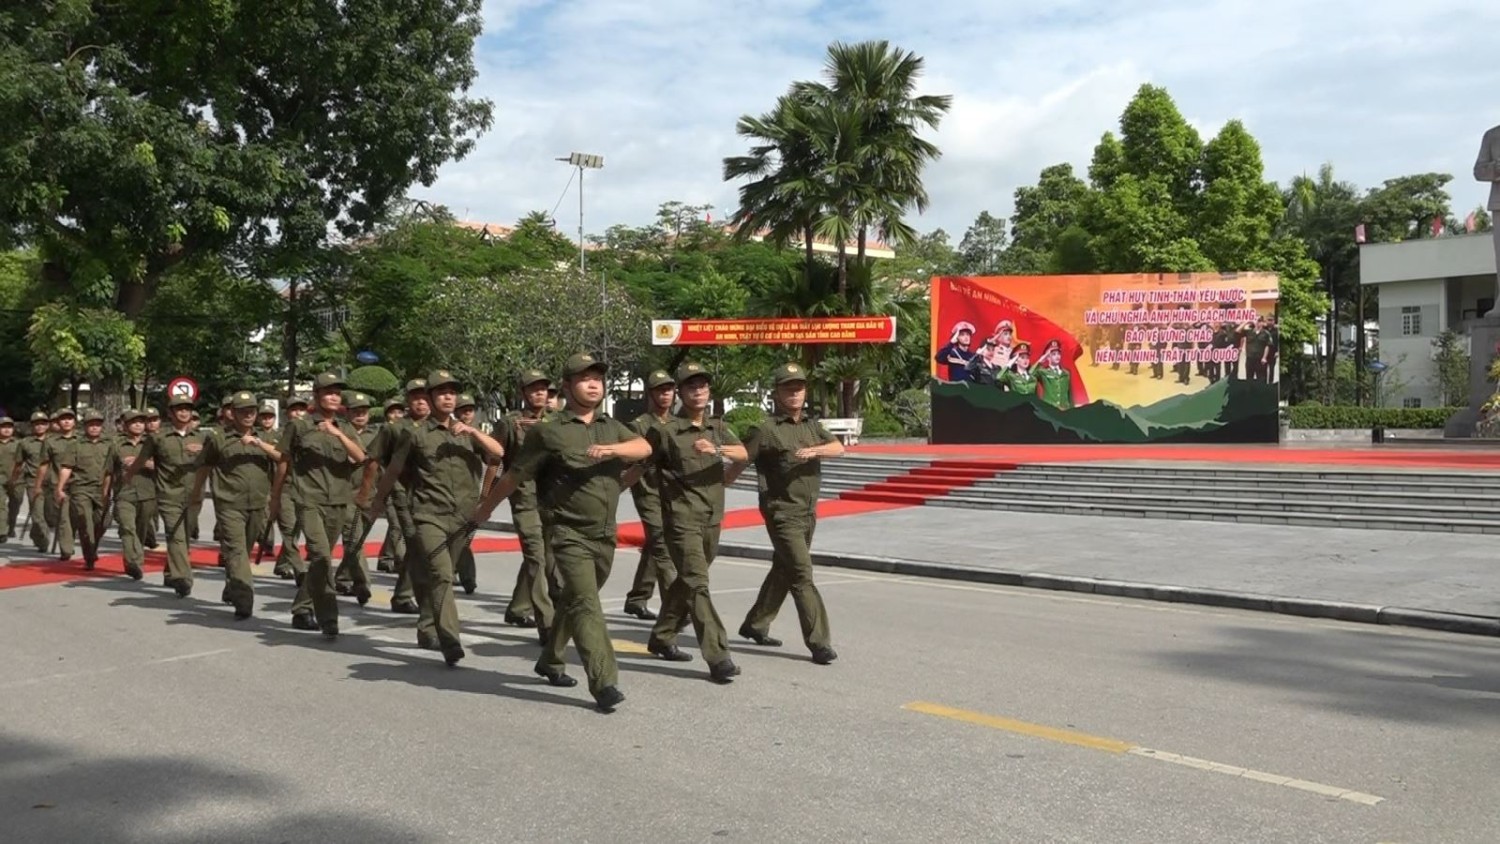 Lực lượng tham gia bảo vệ an ninh, trật tự ở cơ sở diễu hành biểu diễn lực lượng.